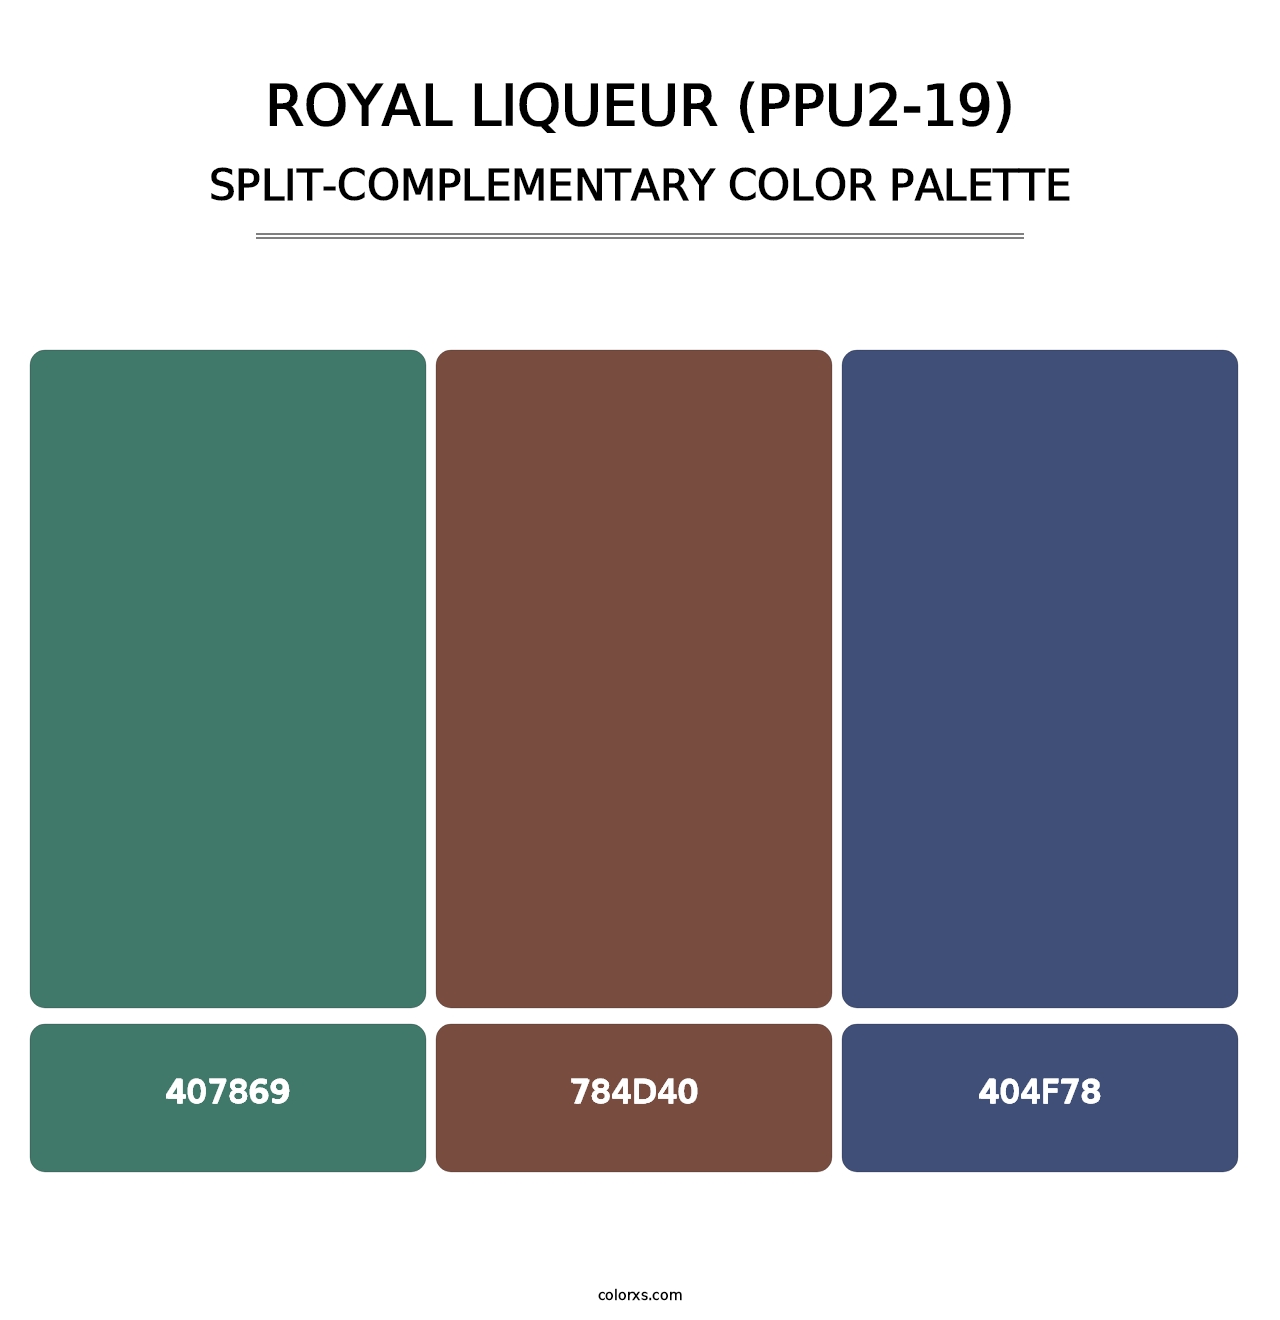 Royal Liqueur (PPU2-19) - Split-Complementary Color Palette